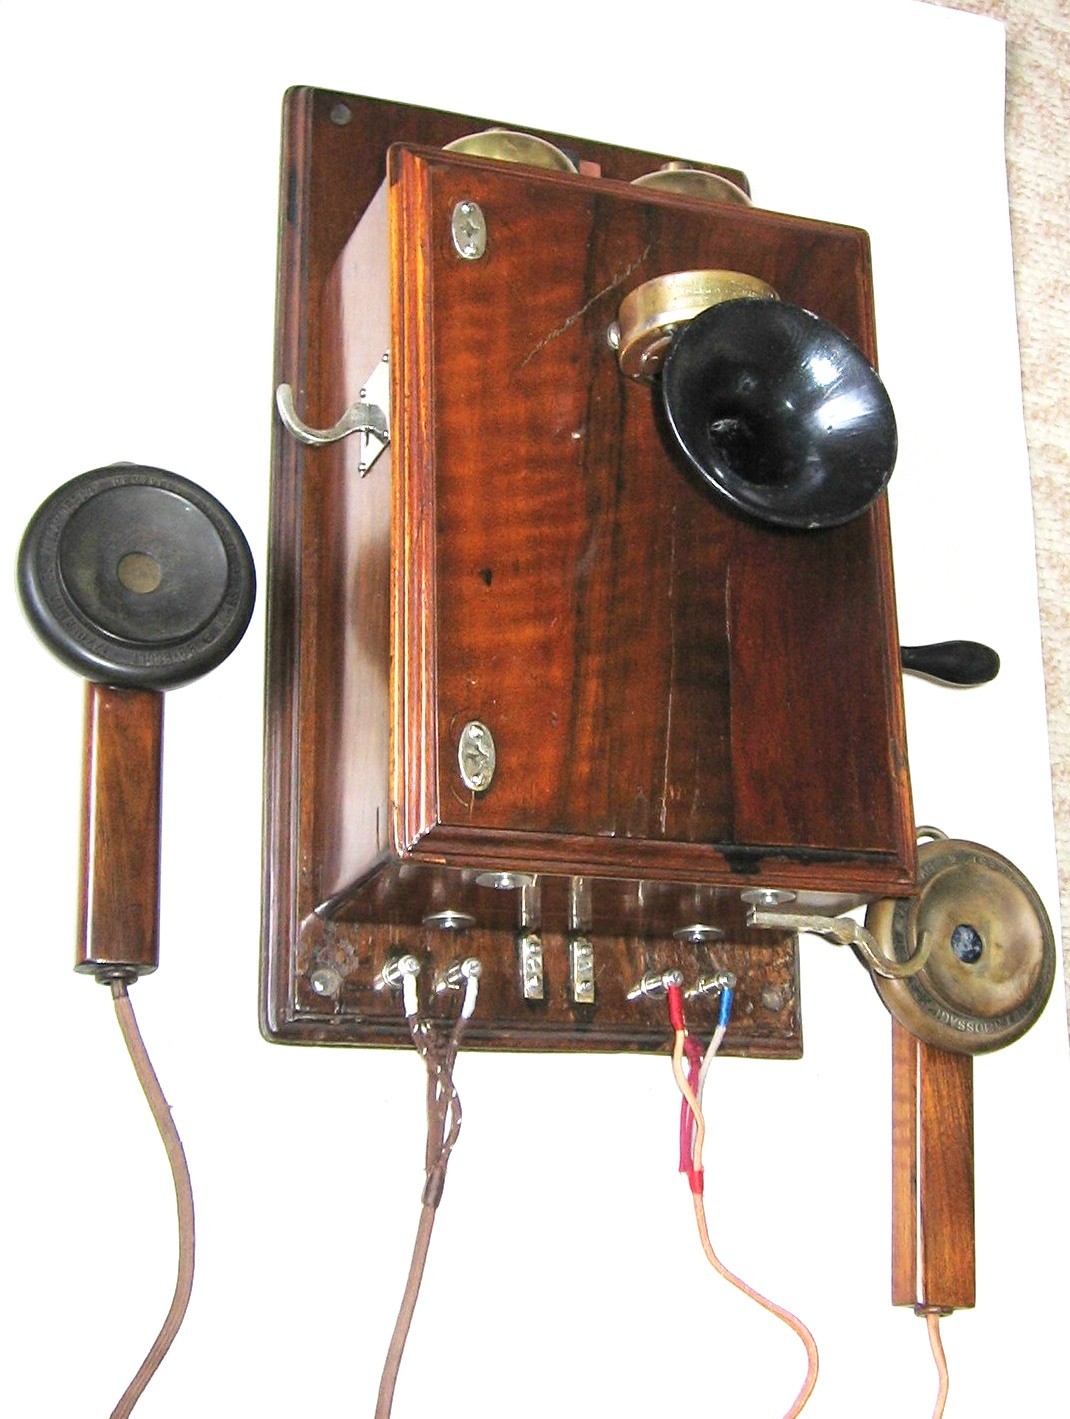 LB fali fadobozos telefon (MÁV szabványú) Mikrofon: 84.94., kanálhallgató: D.89.1 jobb, D.89.2 bal (Postamúzeum CC BY-NC-SA)